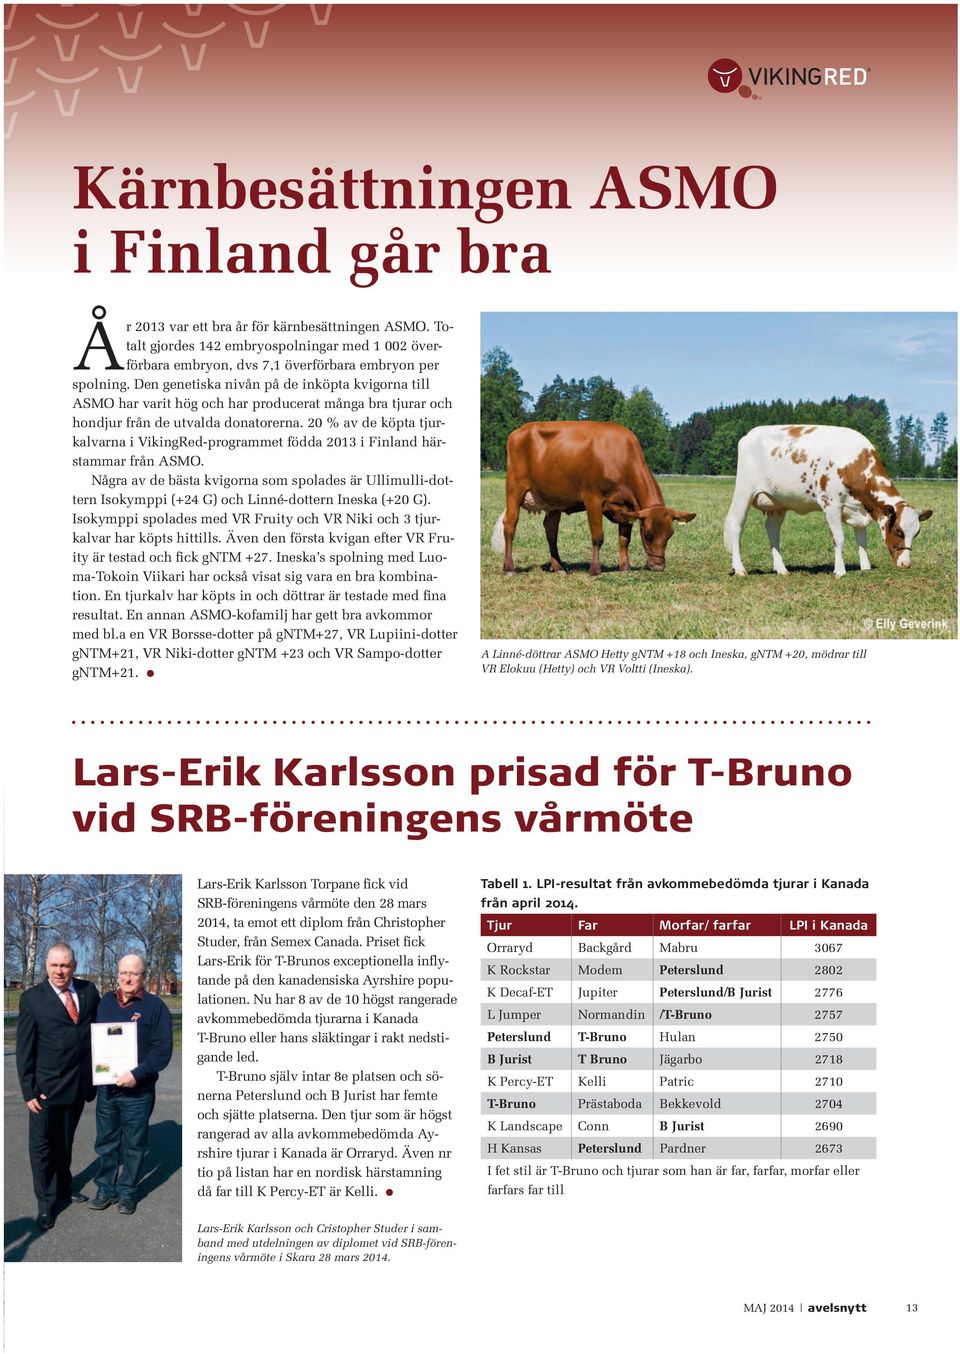 20 % av de köpta tjurkalvarna i VikingRed-programmet födda 2013 i Finland härstammar från ASMO.